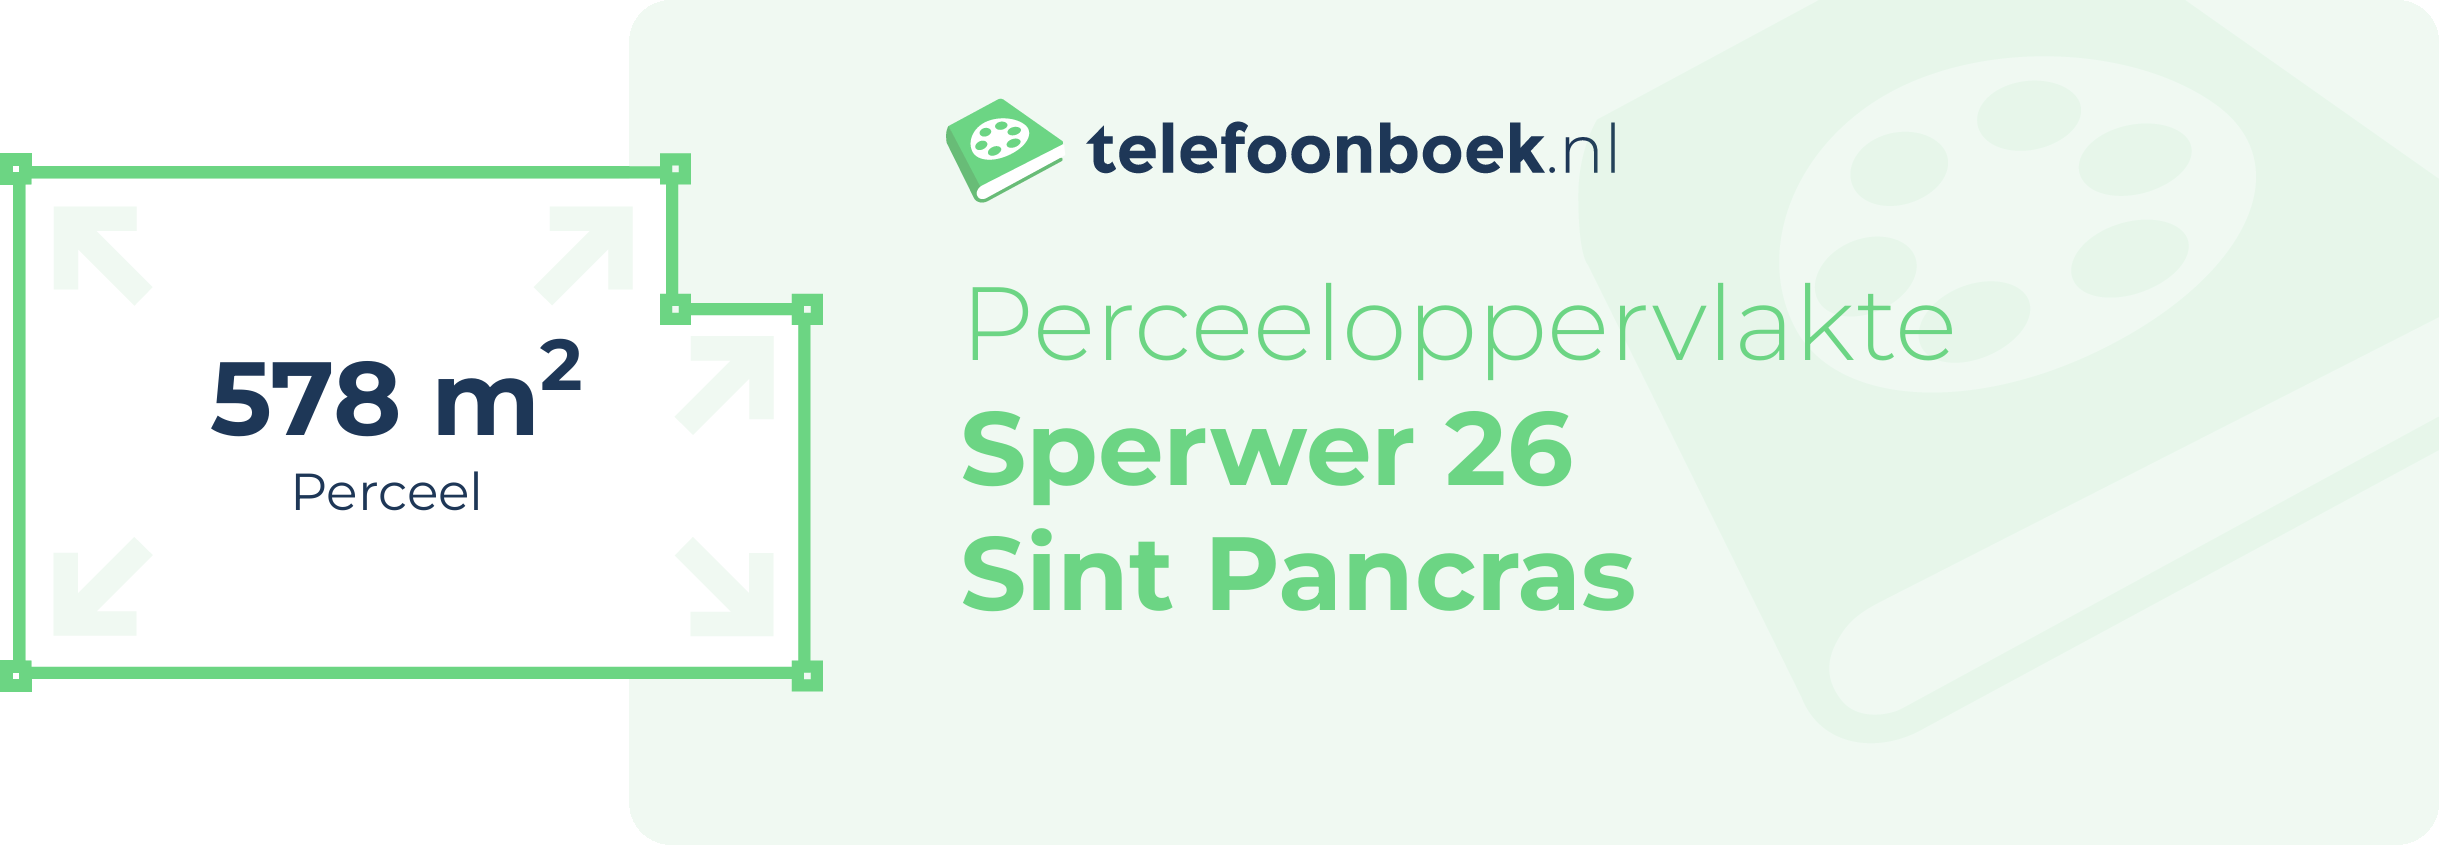 Perceeloppervlakte Sperwer 26 Sint Pancras